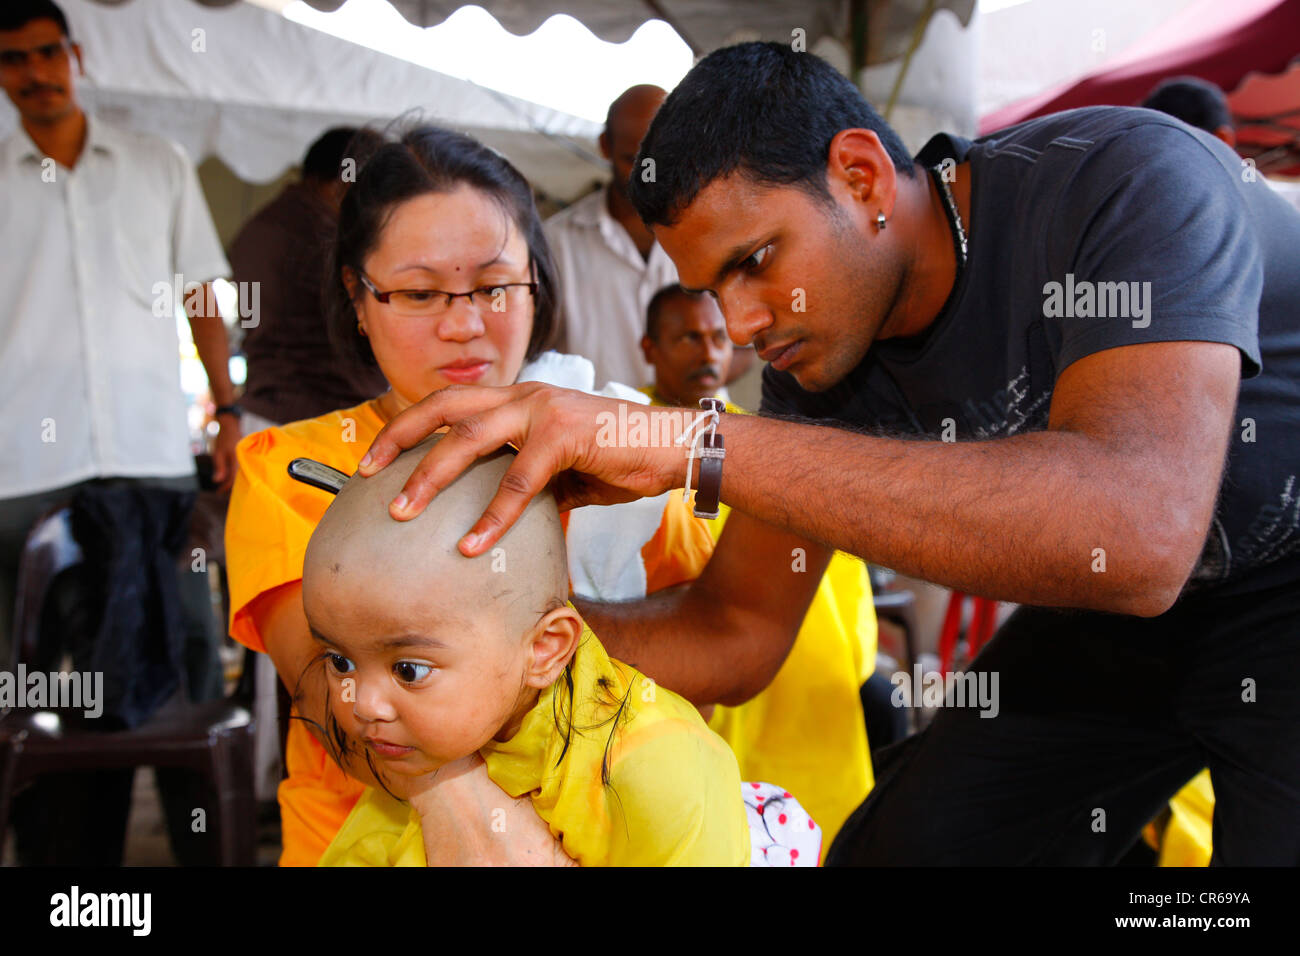 Kind die Haare rasiert werden mit einem Rasiermesser, hinduistische Festival Thaipusam, Batu Caves-Kalkstein-Höhlen und Tempel, Kuala Lumpur, Malaysia Stockfoto